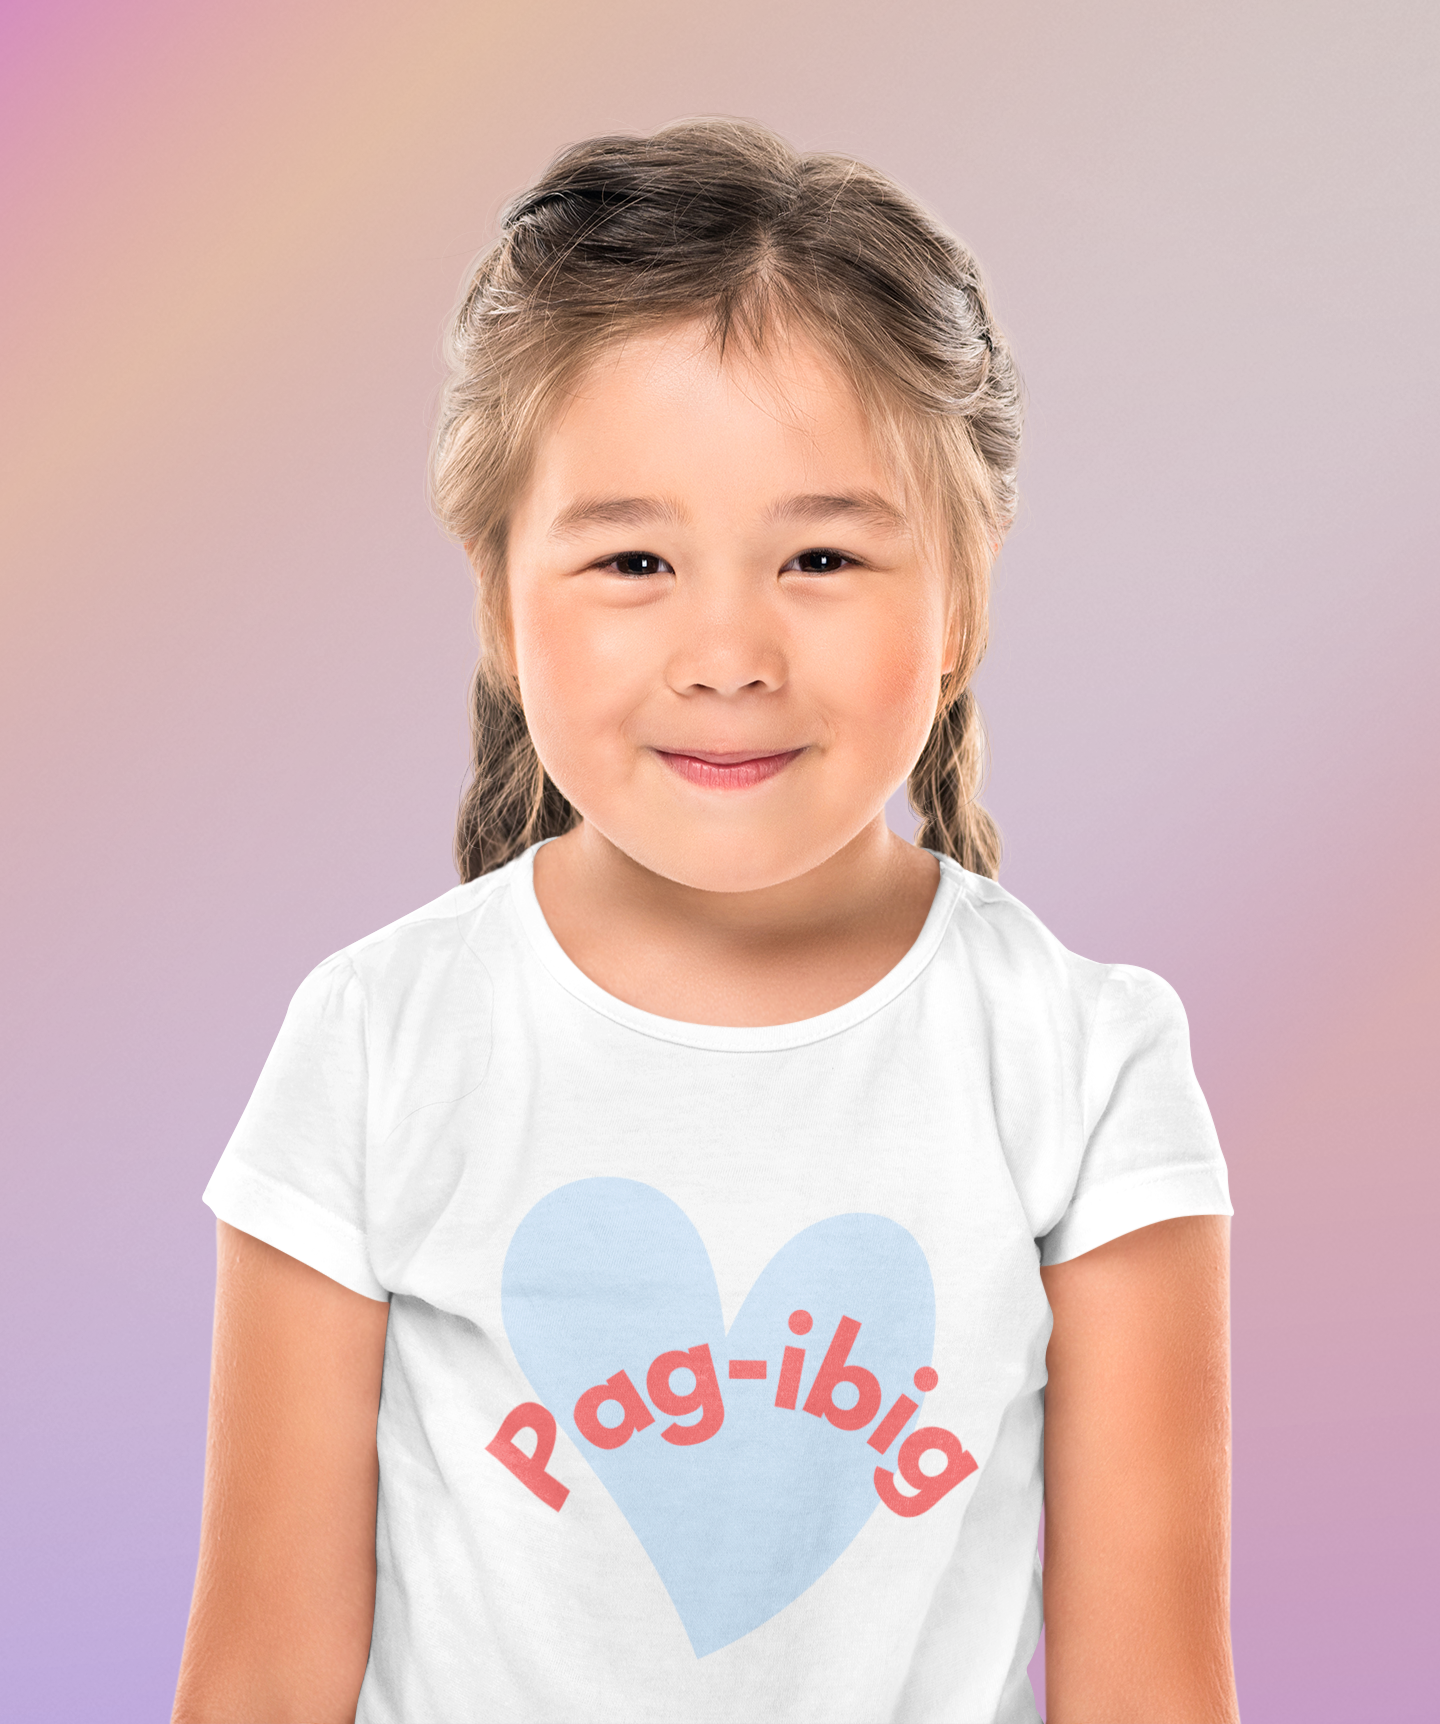 Pag-ibig Toddler T-shirt